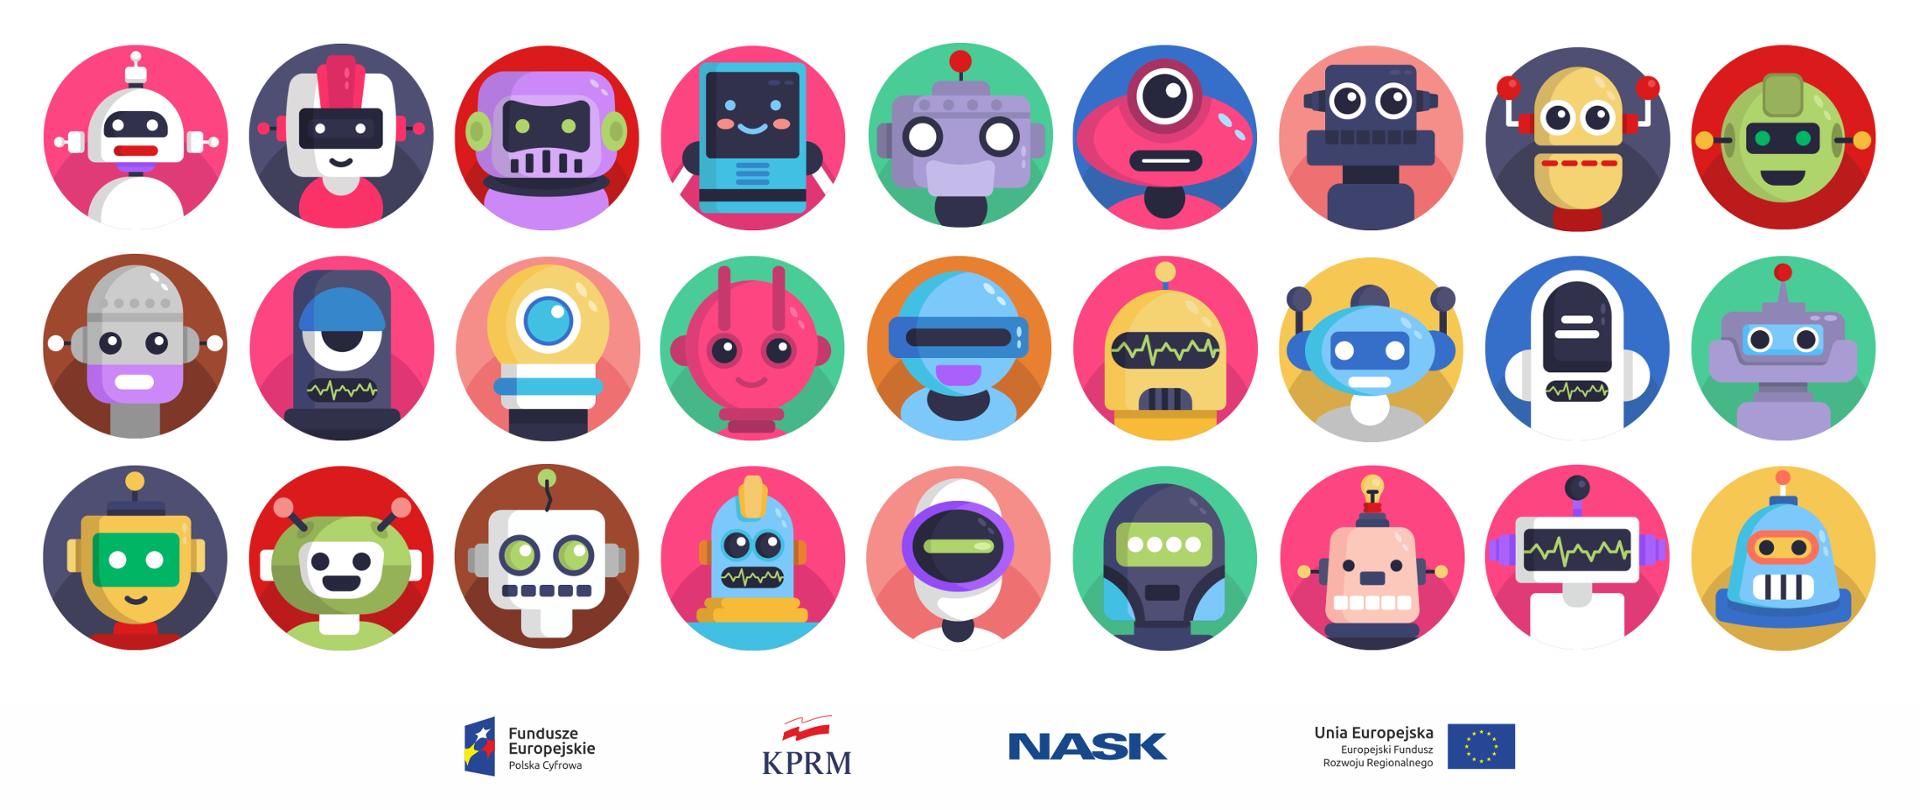 27 kolorowych ikonek graficznych przedstawiających roboty - każda w kolorowym kółku. Trzy rzędy, po 9 ikonek w każdym.